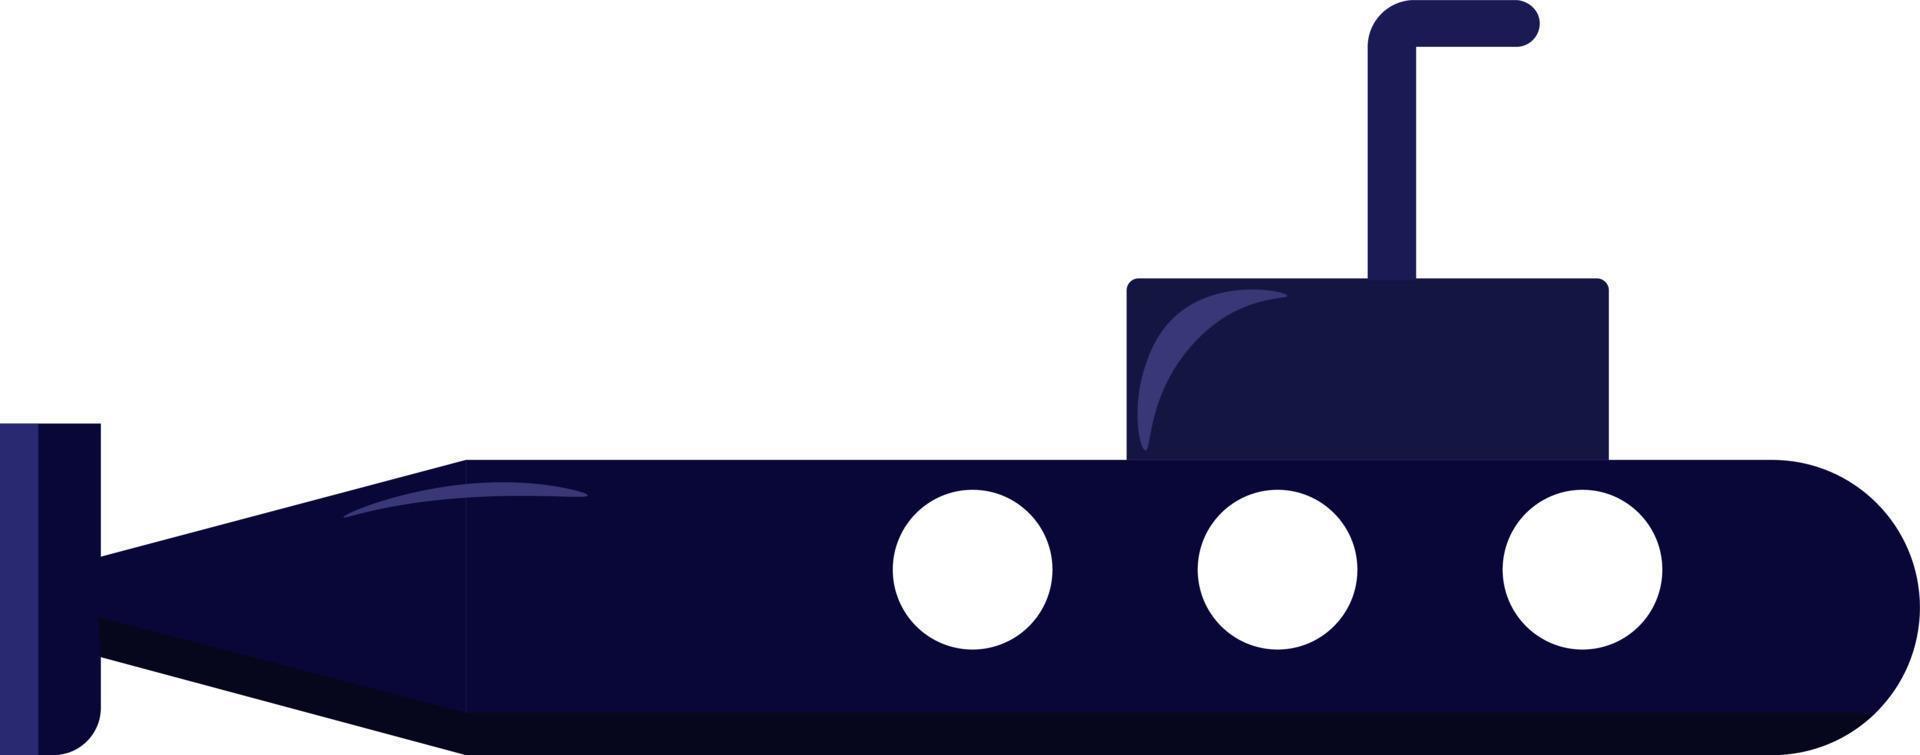 submarino azul, ilustración, vector sobre fondo blanco.